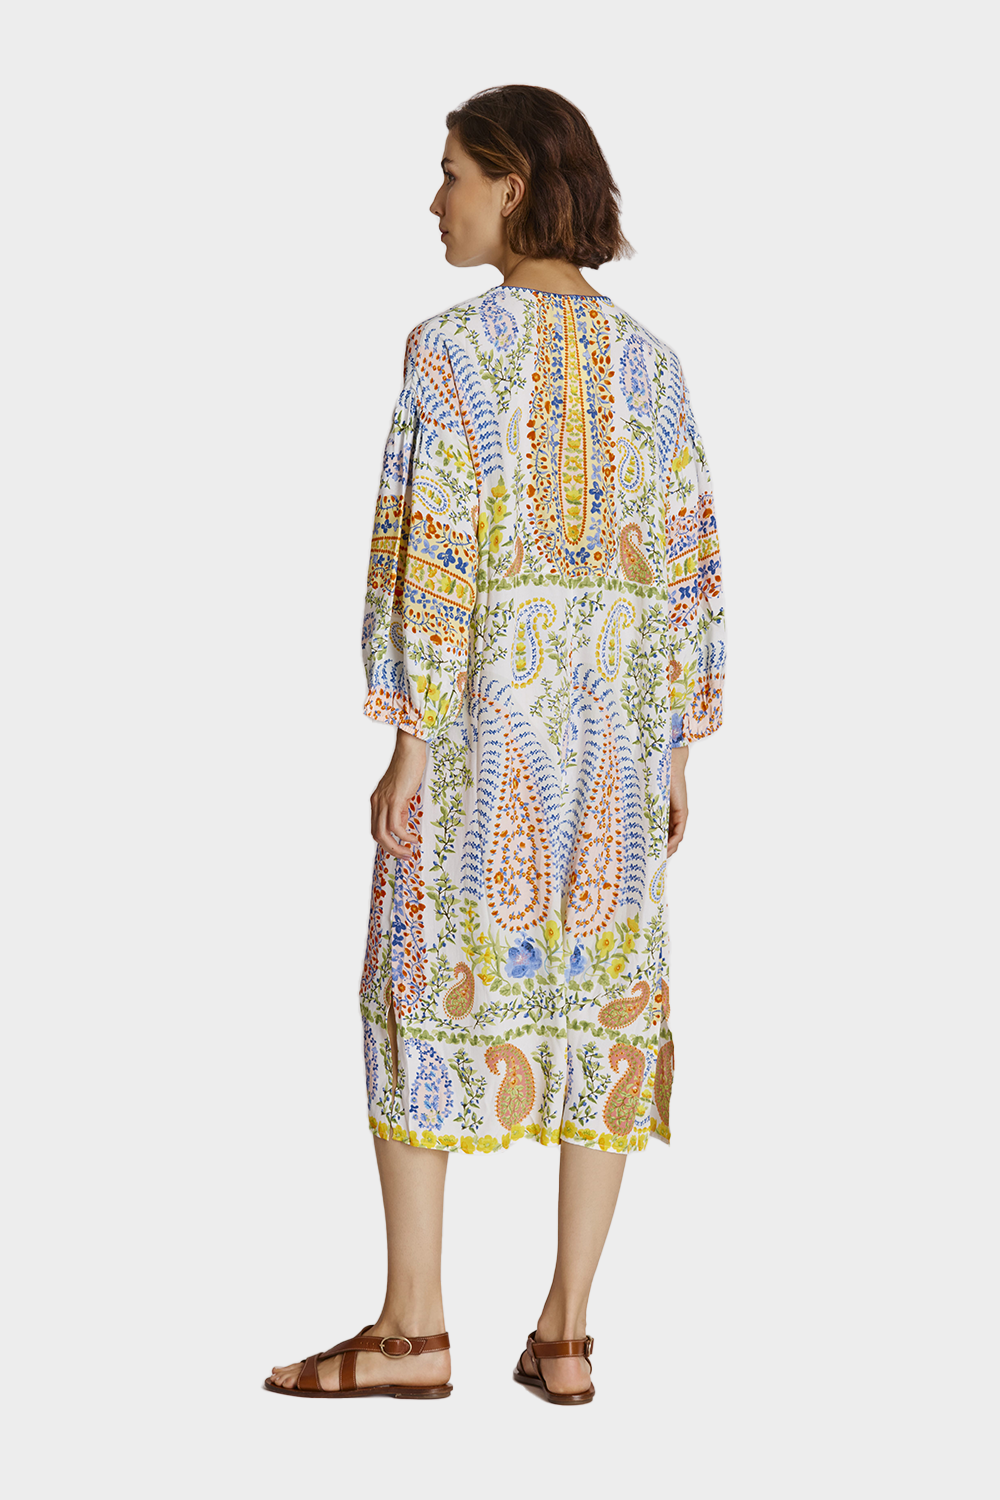 שמלת מידי לנשים הדפס פייזלי RENE DERHY Vendome online | ונדום .